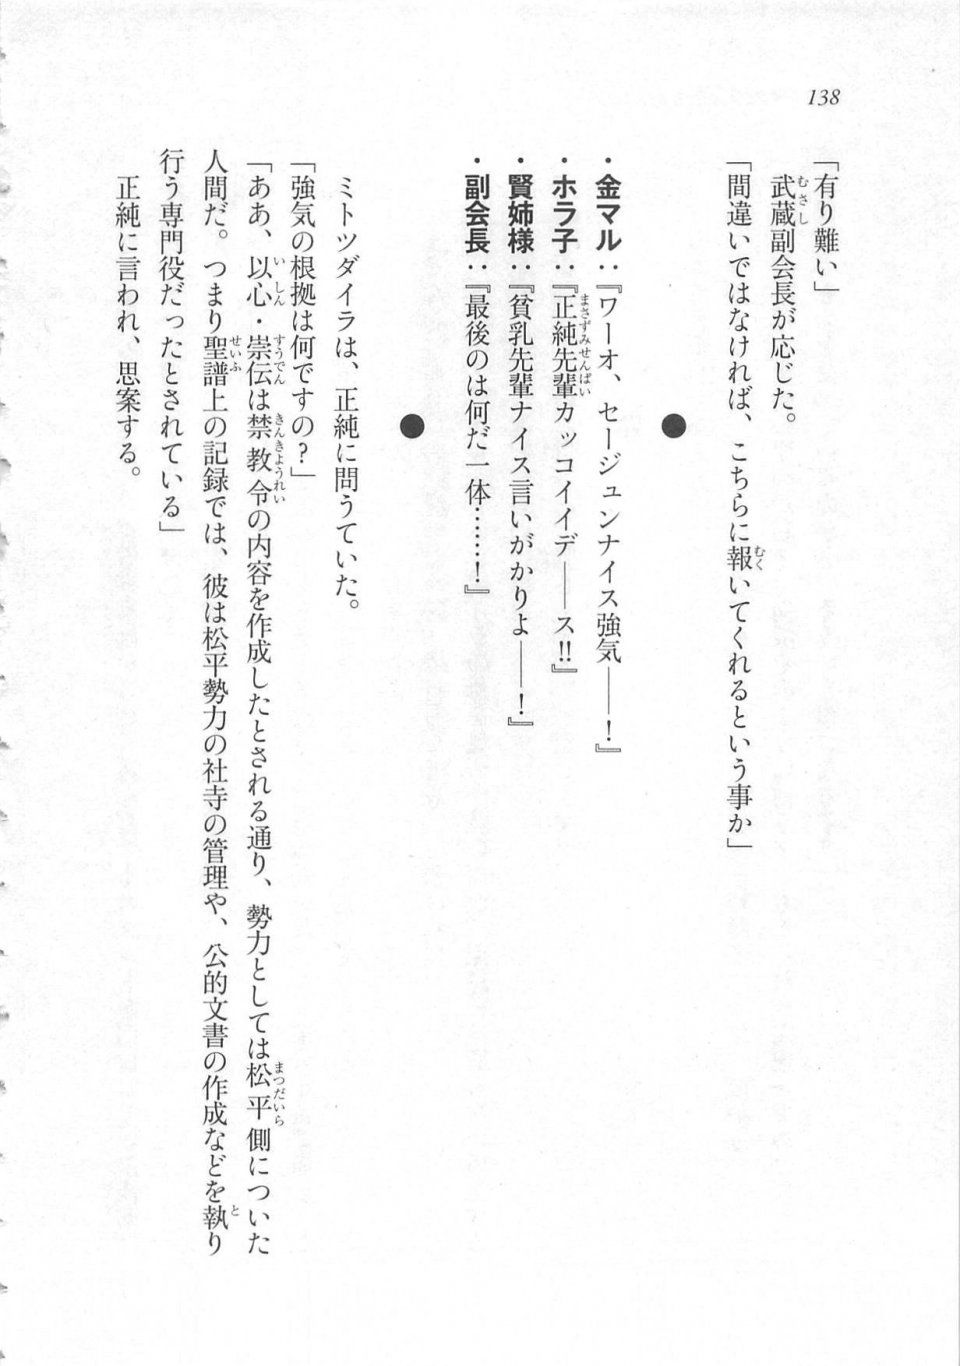 Kyoukai Senjou no Horizon LN Sidestory Vol 3 - Photo #142